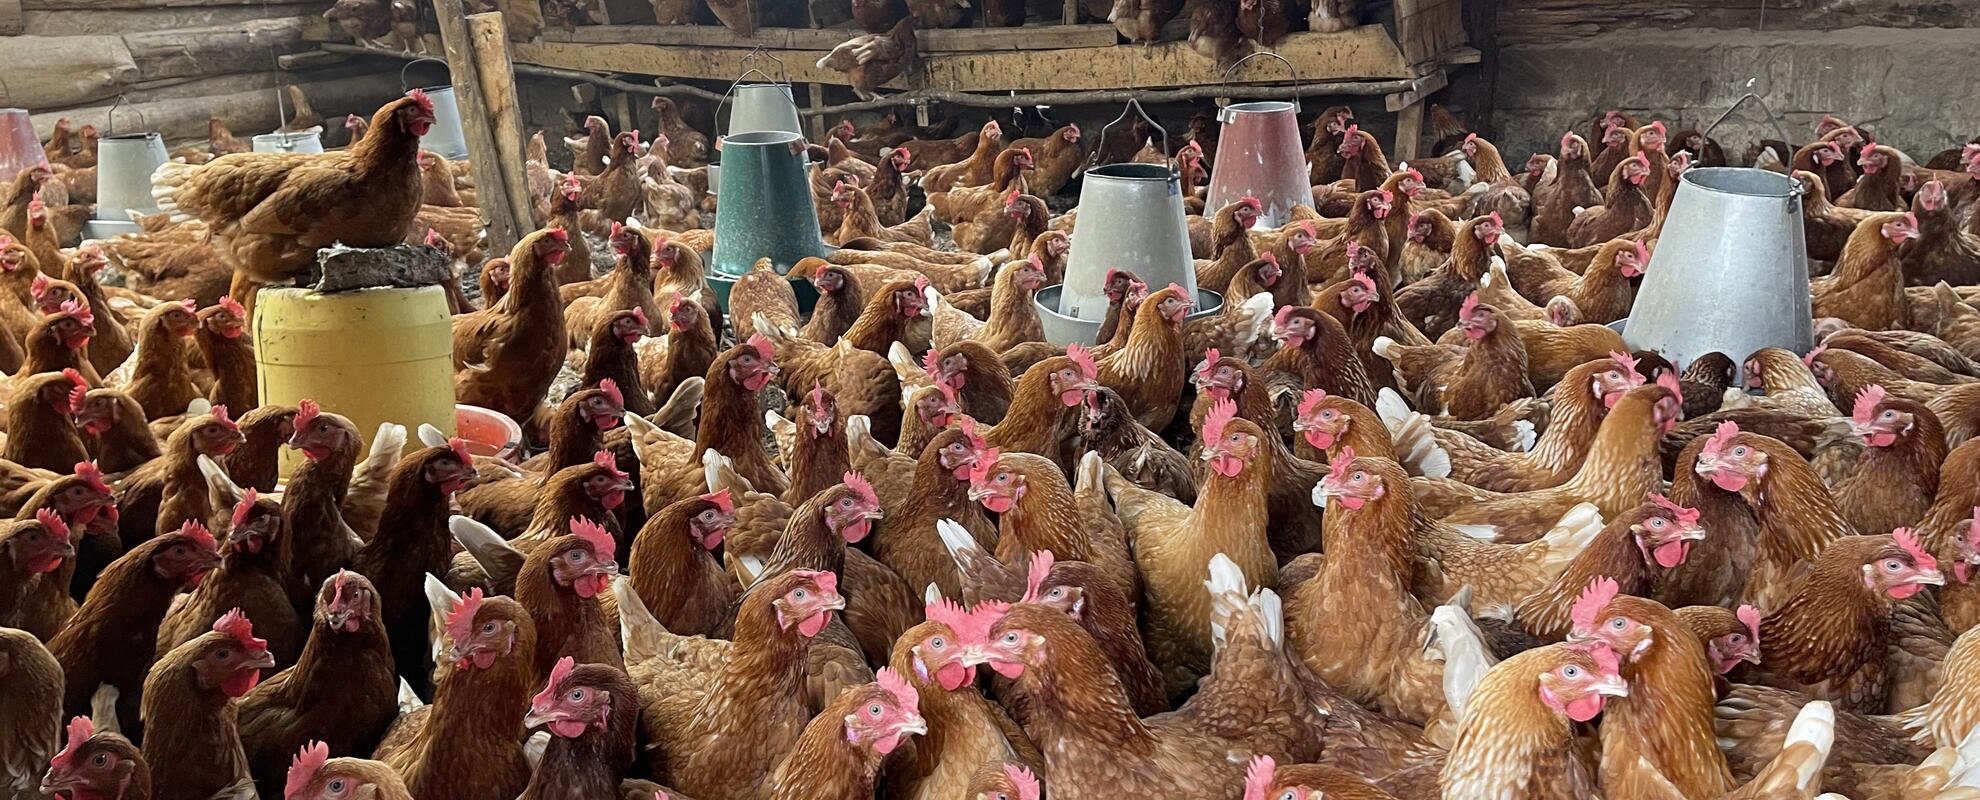 Smallholder poultry farming in Kenya